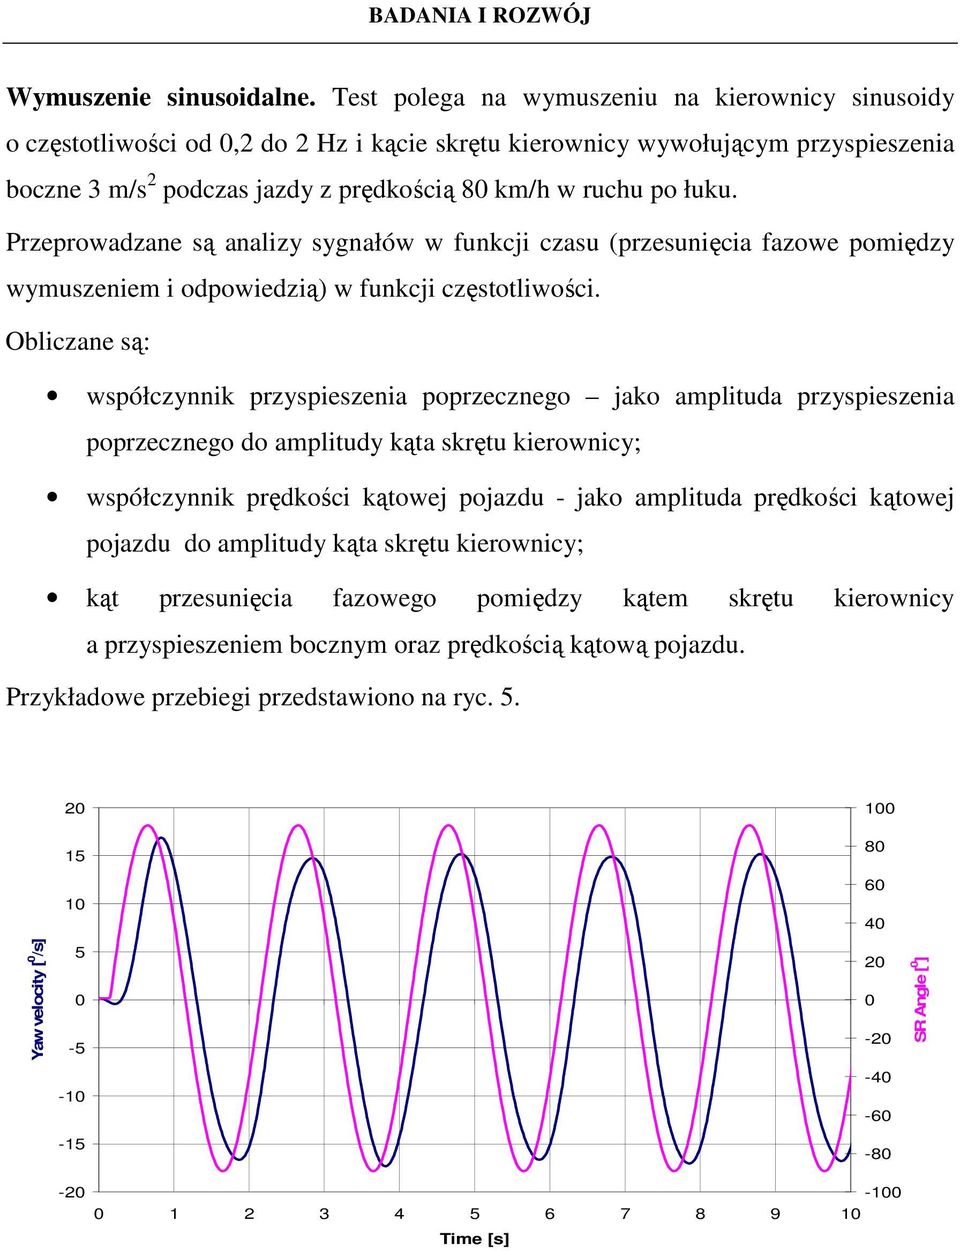 Przeprowadzane są analizy sygnałów w funkcji czasu (przesunięcia fazowe pomiędzy wymuszeniem i odpowiedzią) w funkcji częstotliwości.